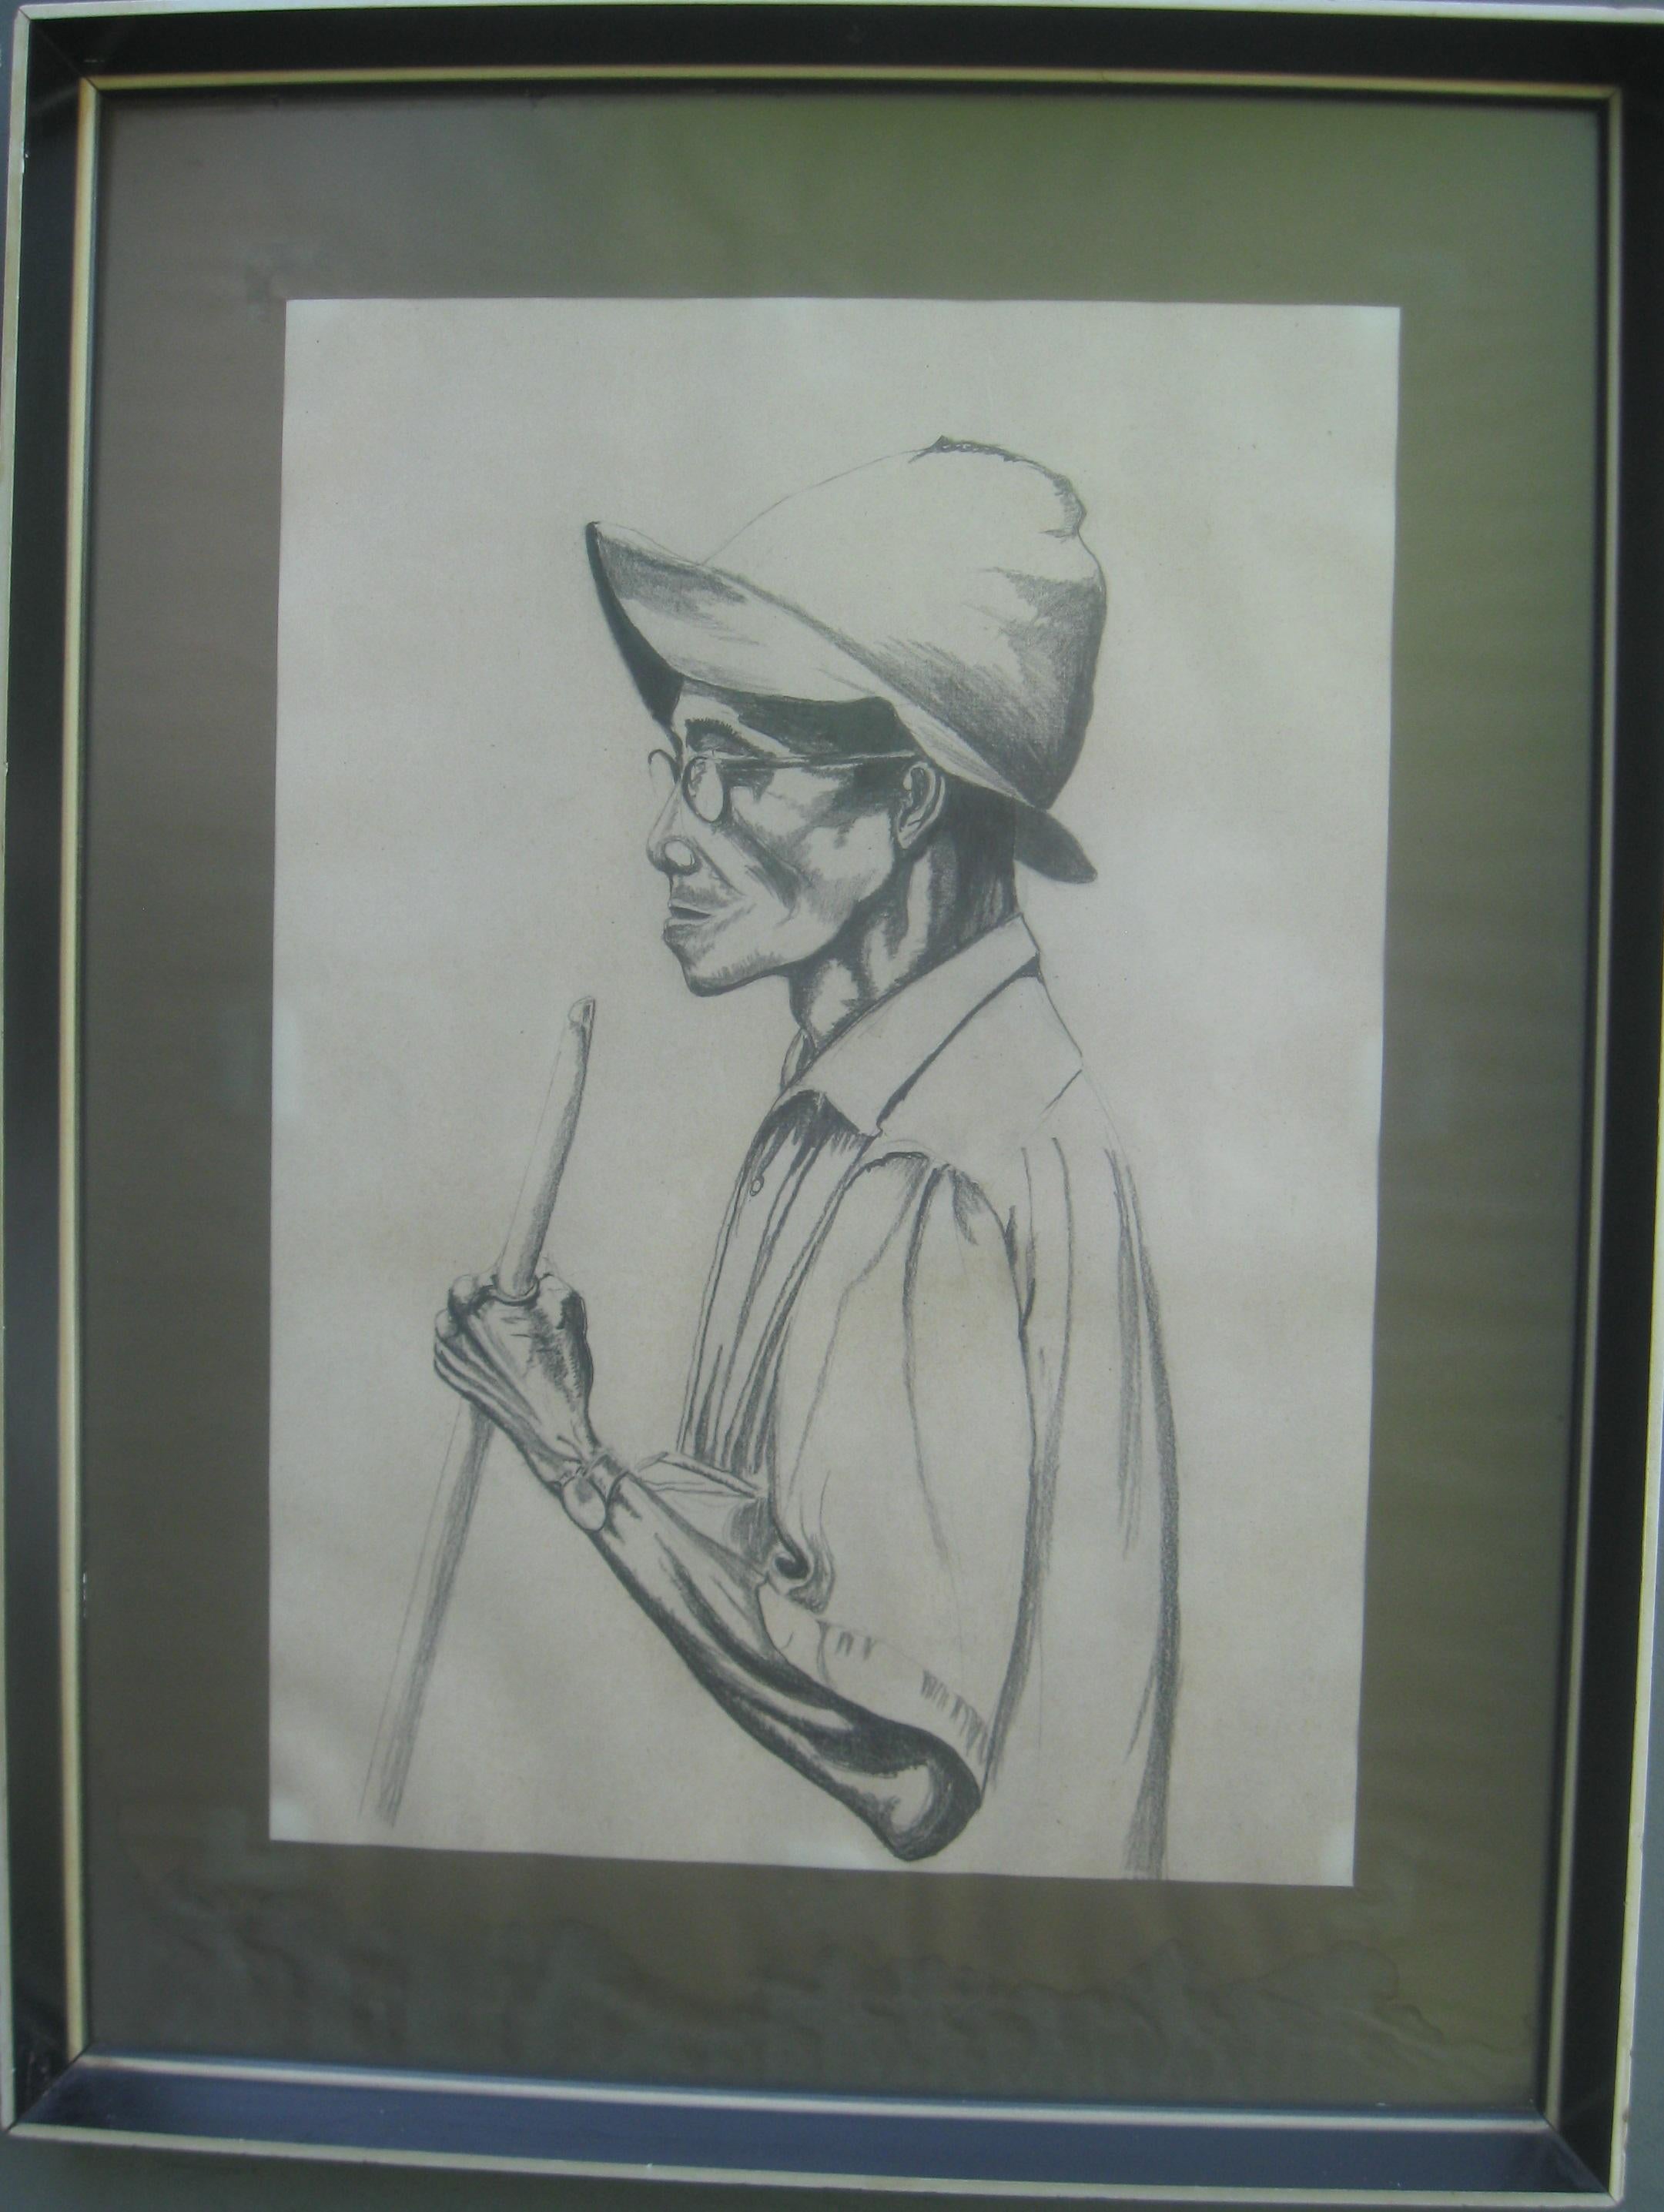 « Portrait d'un tribu ».  Crayon et crayon de Conte sur papier vers les années 1960. 